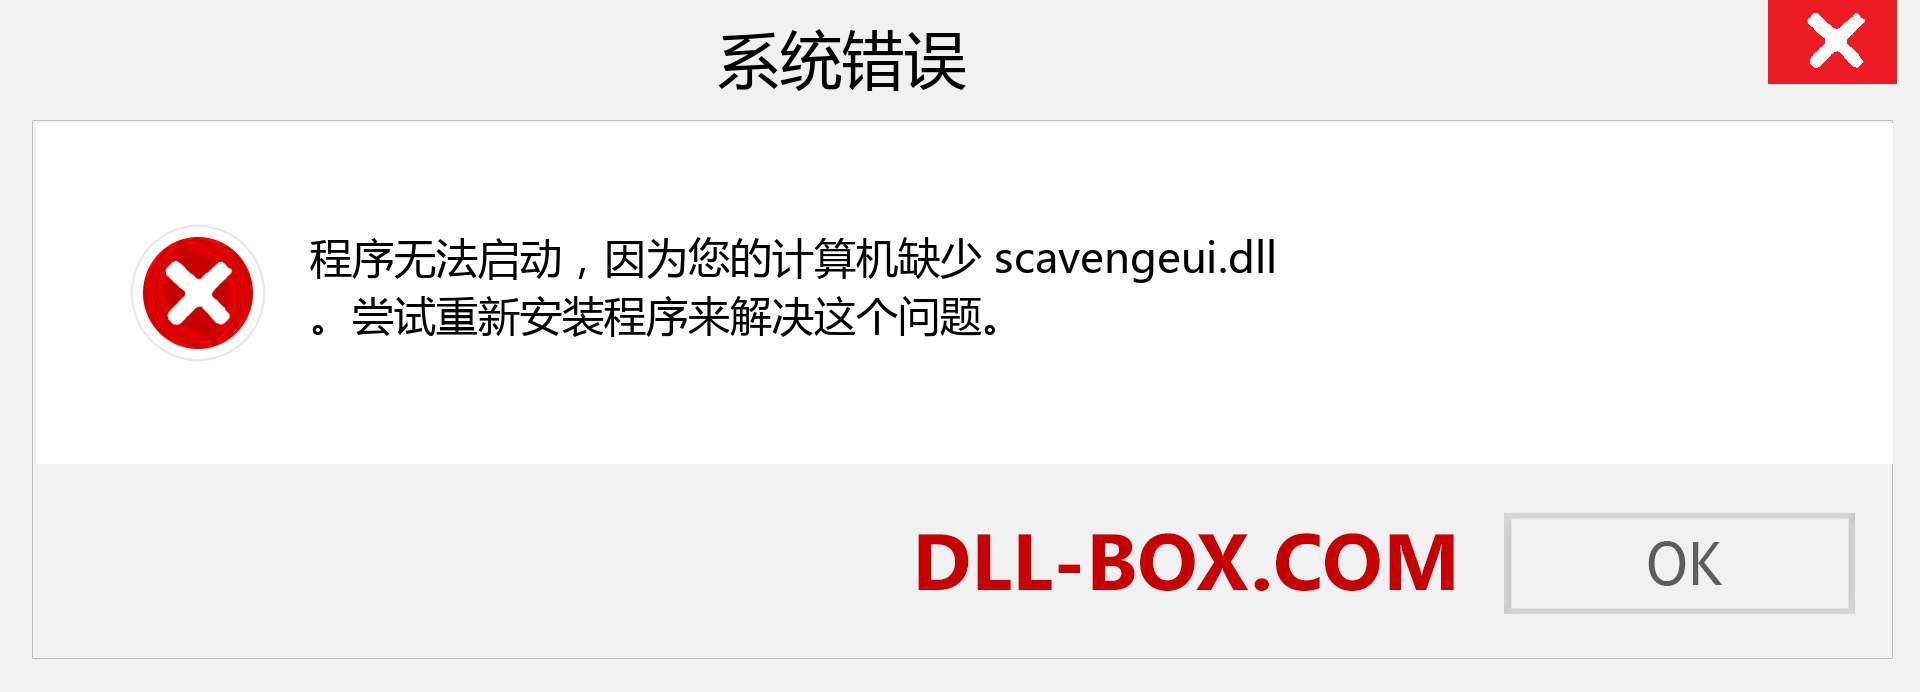 scavengeui.dll 文件丢失？。 适用于 Windows 7、8、10 的下载 - 修复 Windows、照片、图像上的 scavengeui dll 丢失错误